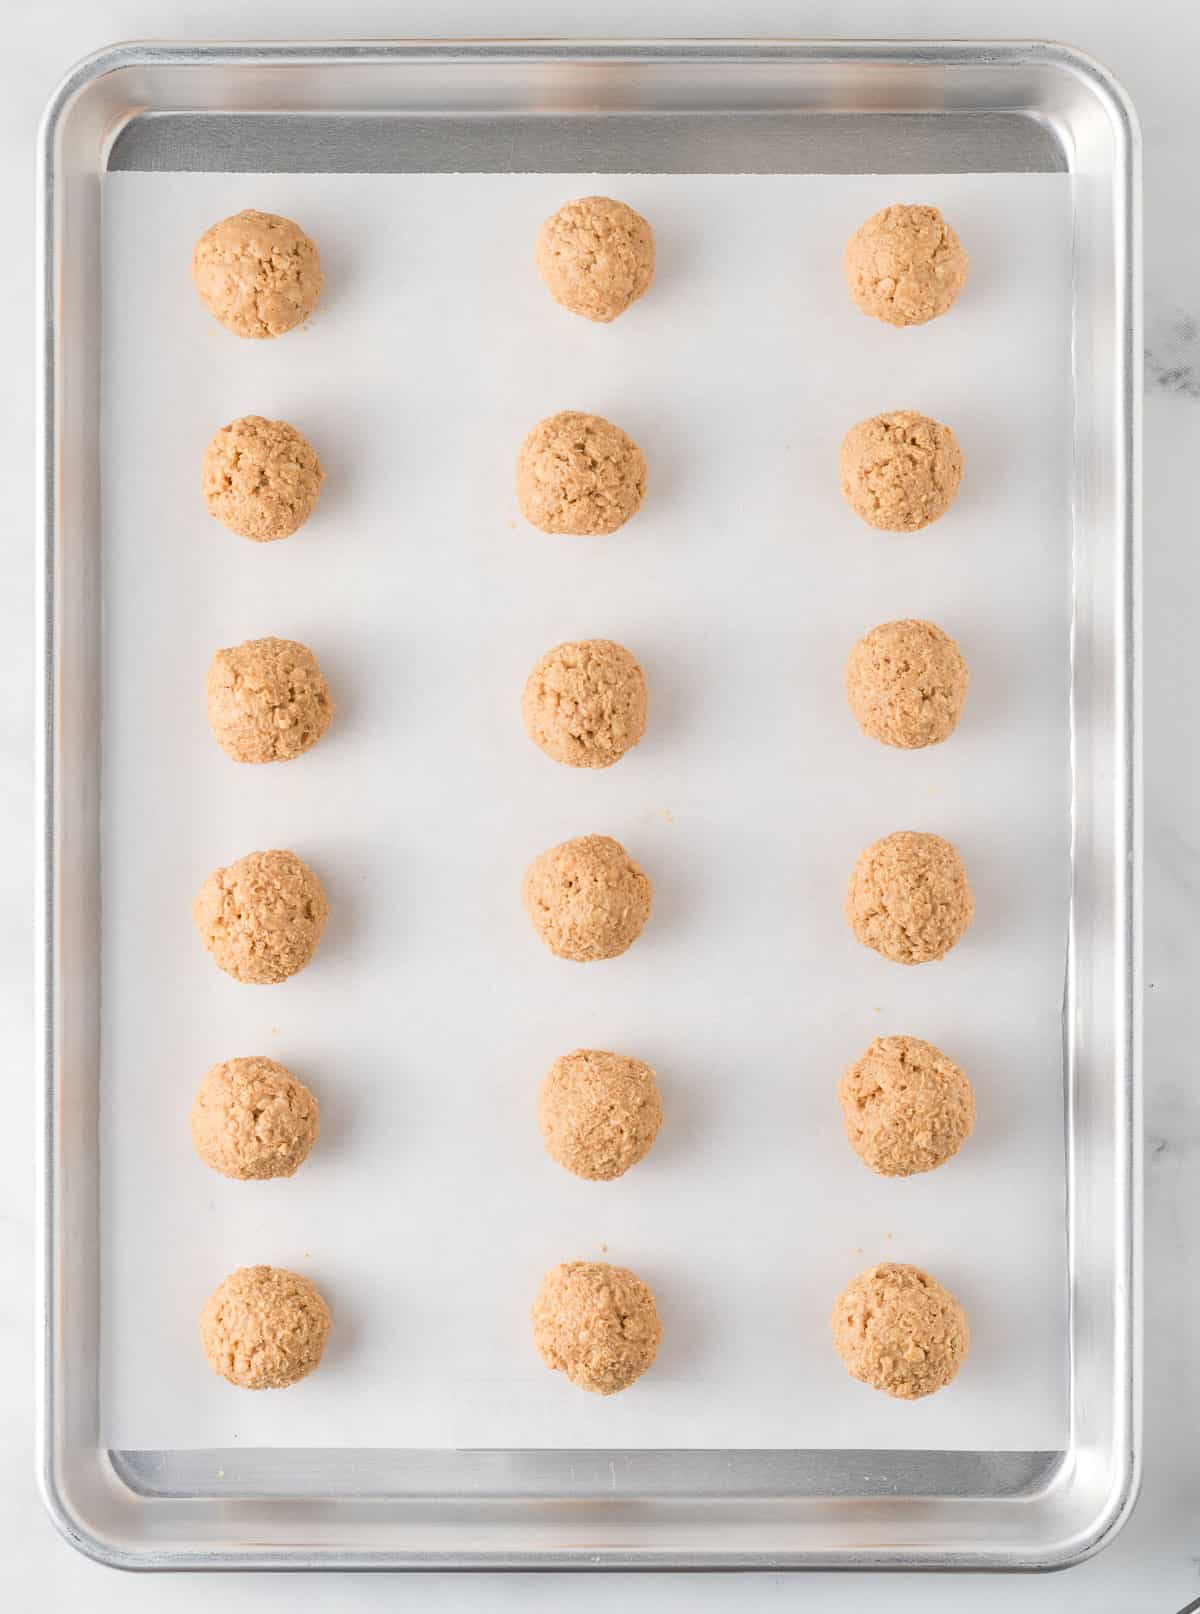 peanut butter rice krispies balls on a baking sheet